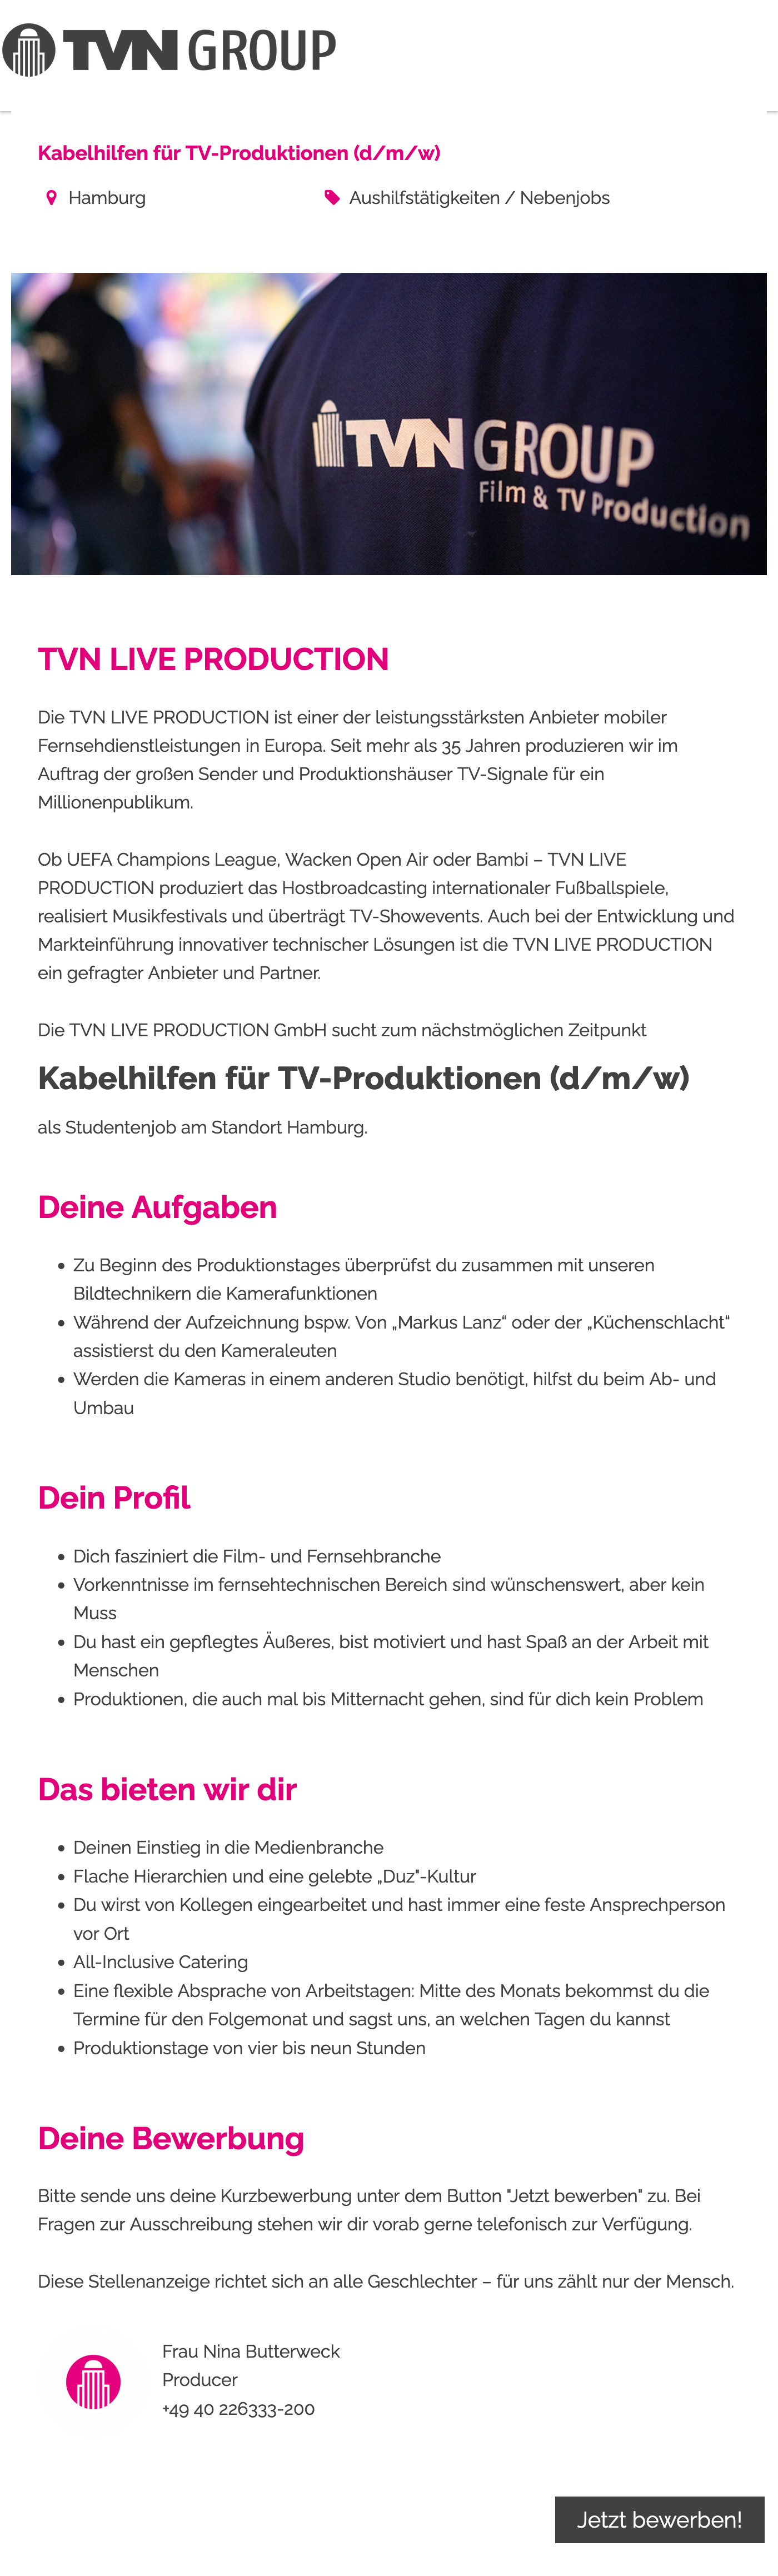 Kabelhilfen für TV-Produktionen (d/m/w)